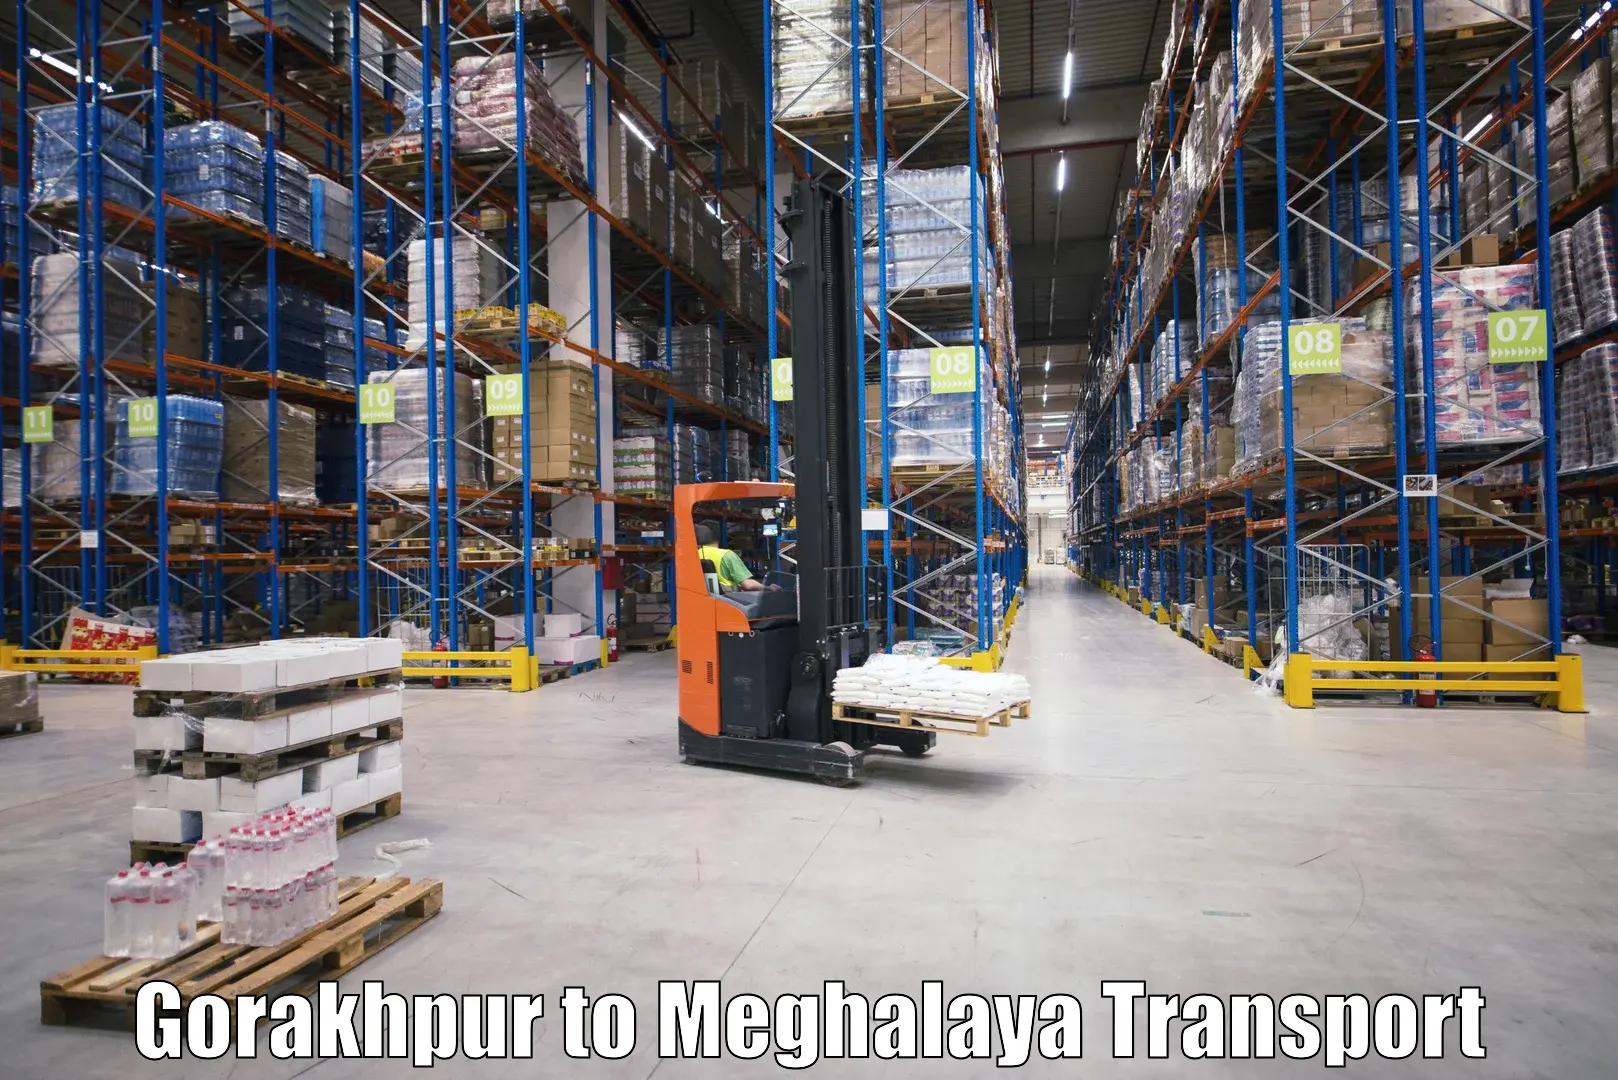 Online transport booking Gorakhpur to Mairang